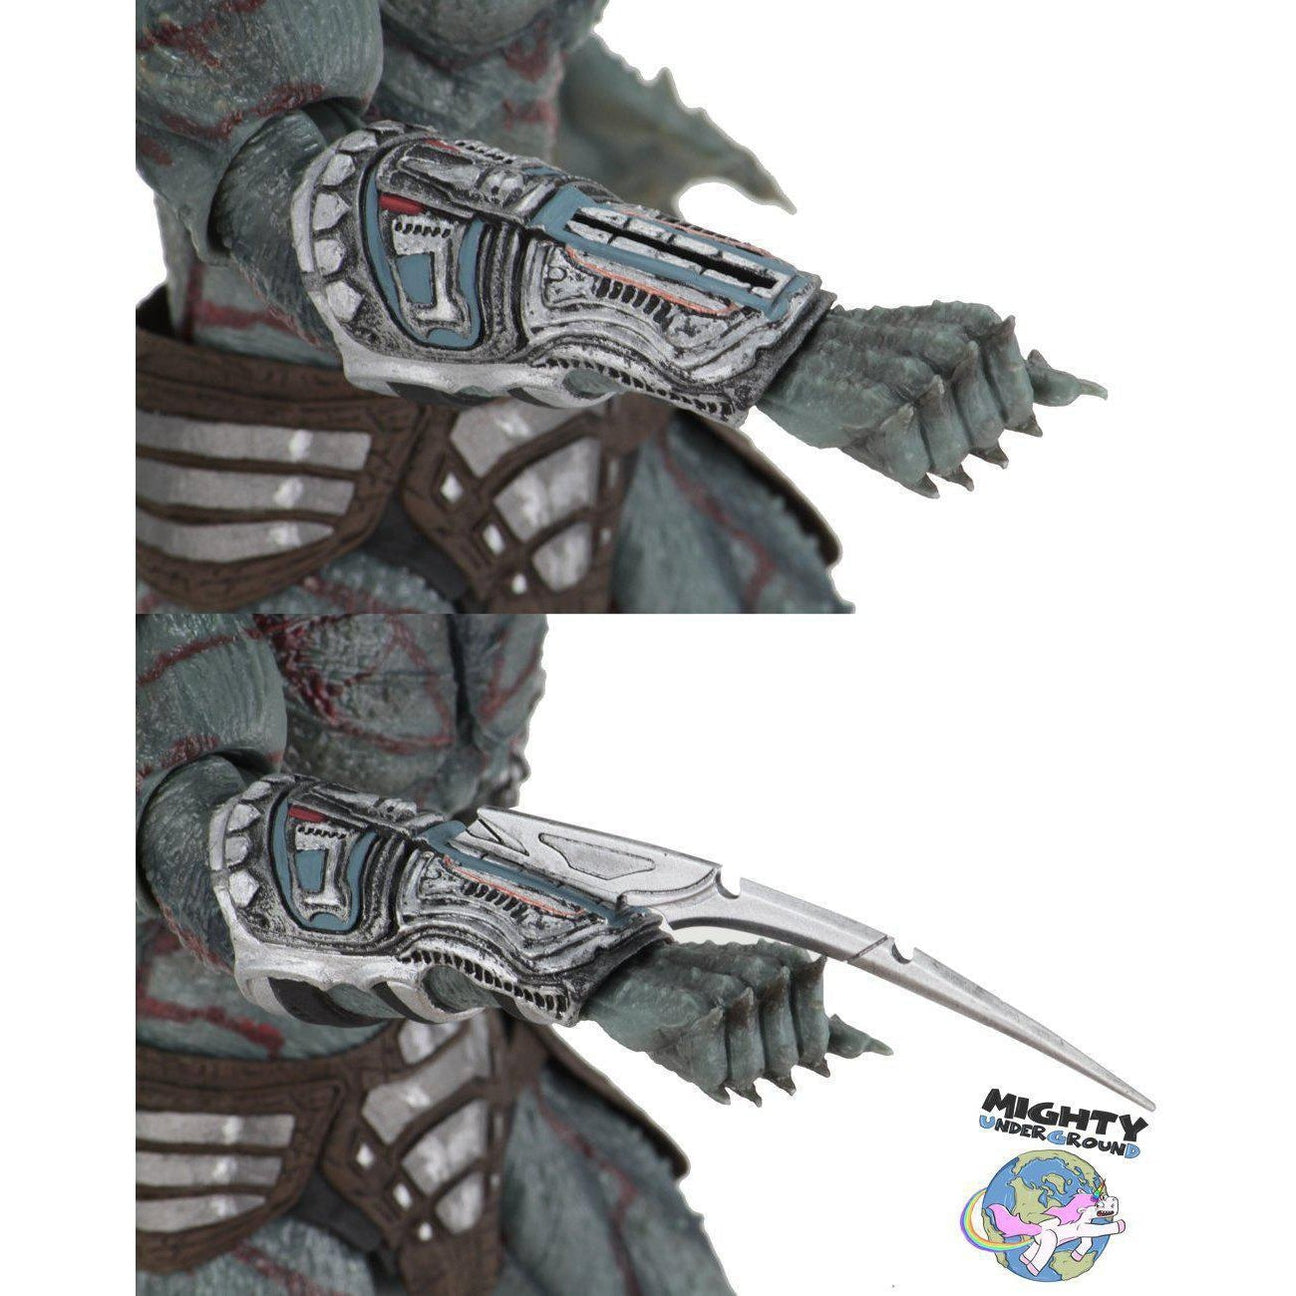 Predator (2018): Deluxe Armored Assassin-Actionfiguren-NECA-mighty-underground